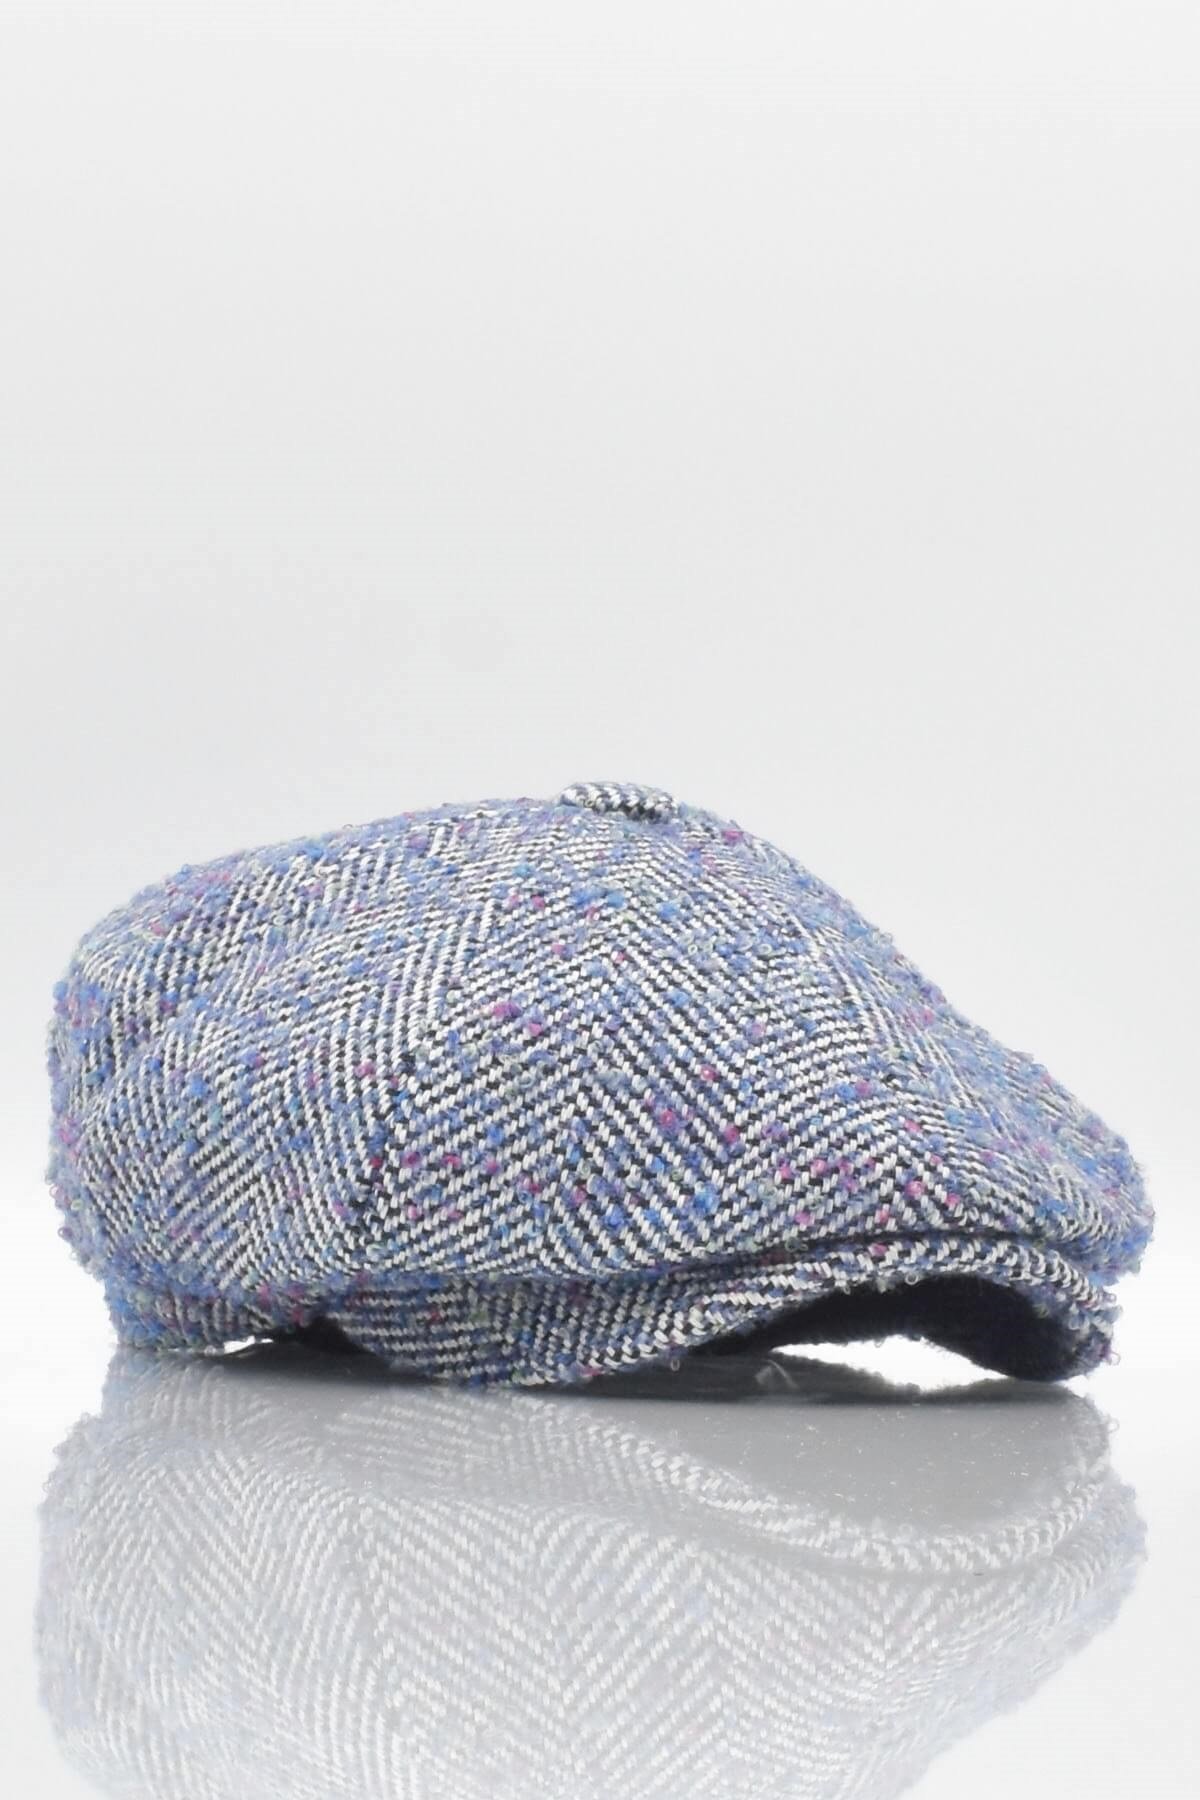 Külah Denizci Tipi Kasket Balıksırtı Desenli Yün Şapka Mavi KLH6899